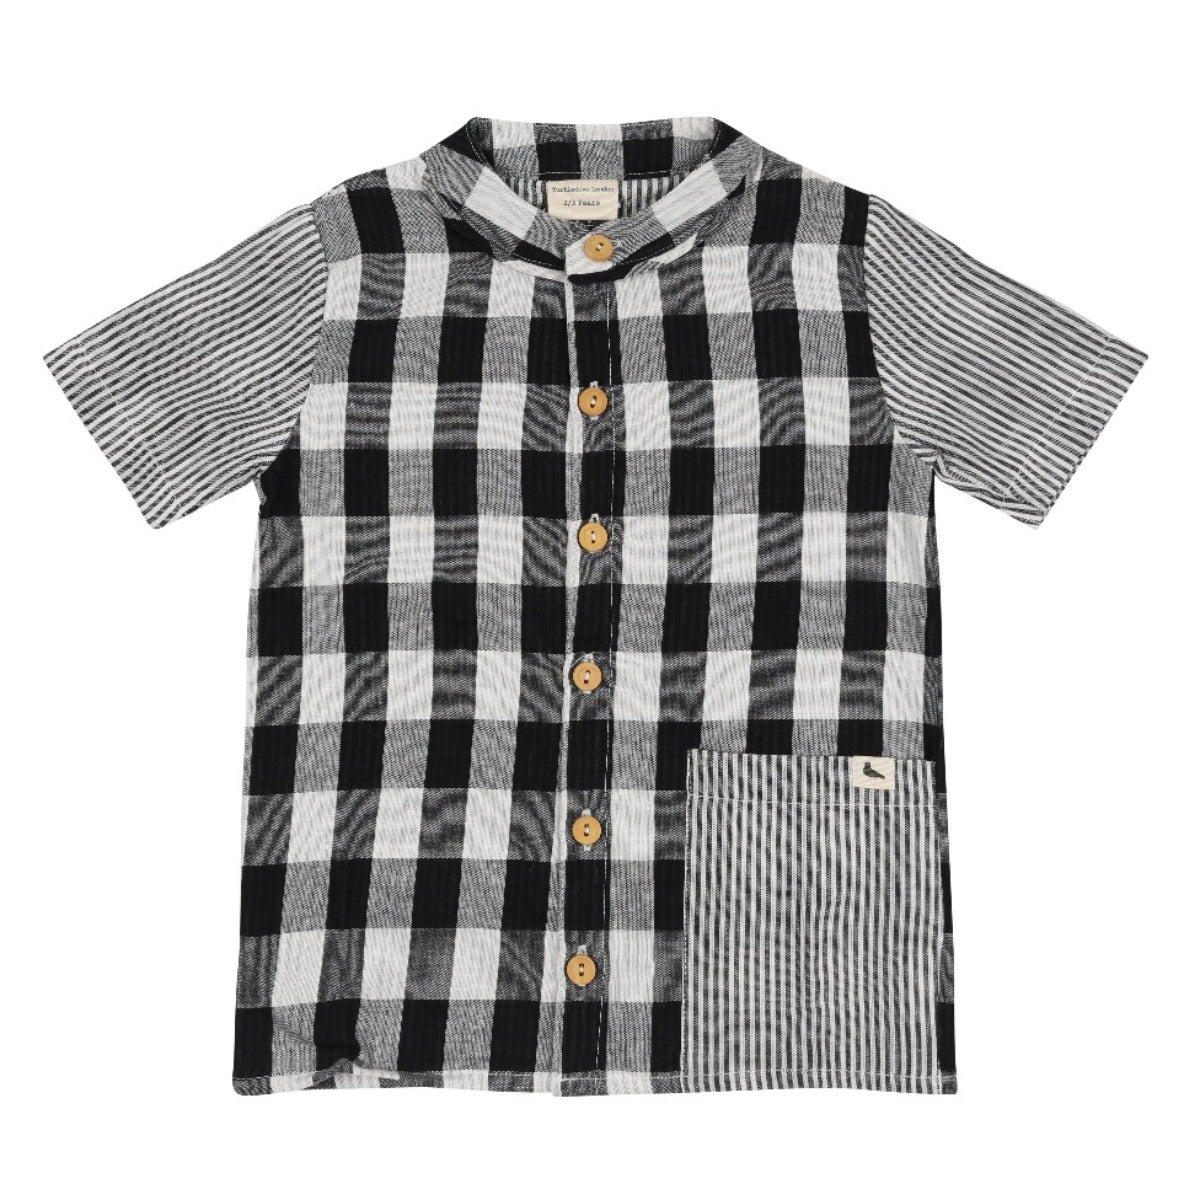 Stripe/Check Shirt